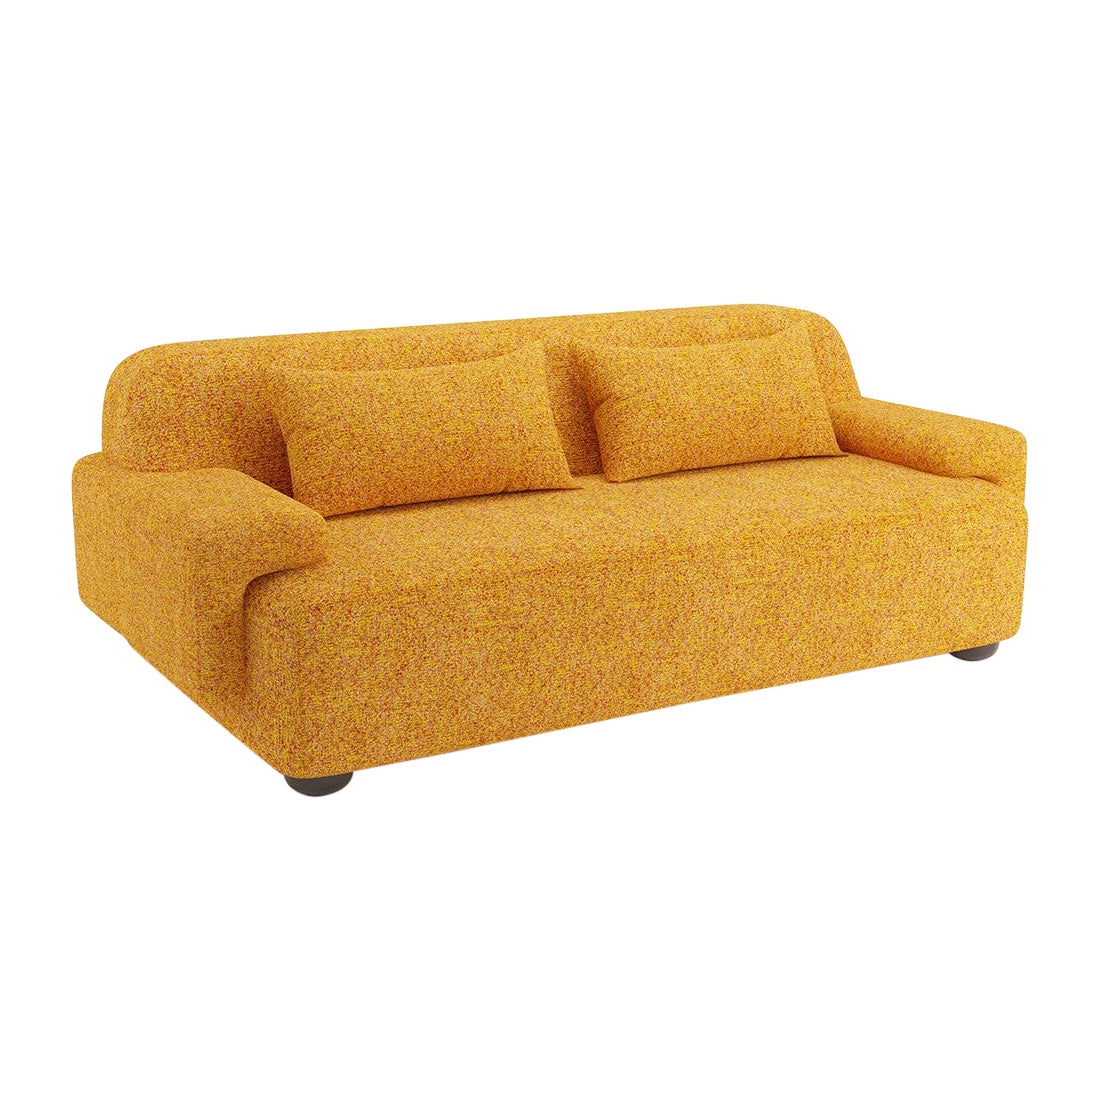 Popus Editions Lena 2.5 Seater Sofa in Saffron Zanzi Linen & Wool Blend Fabric